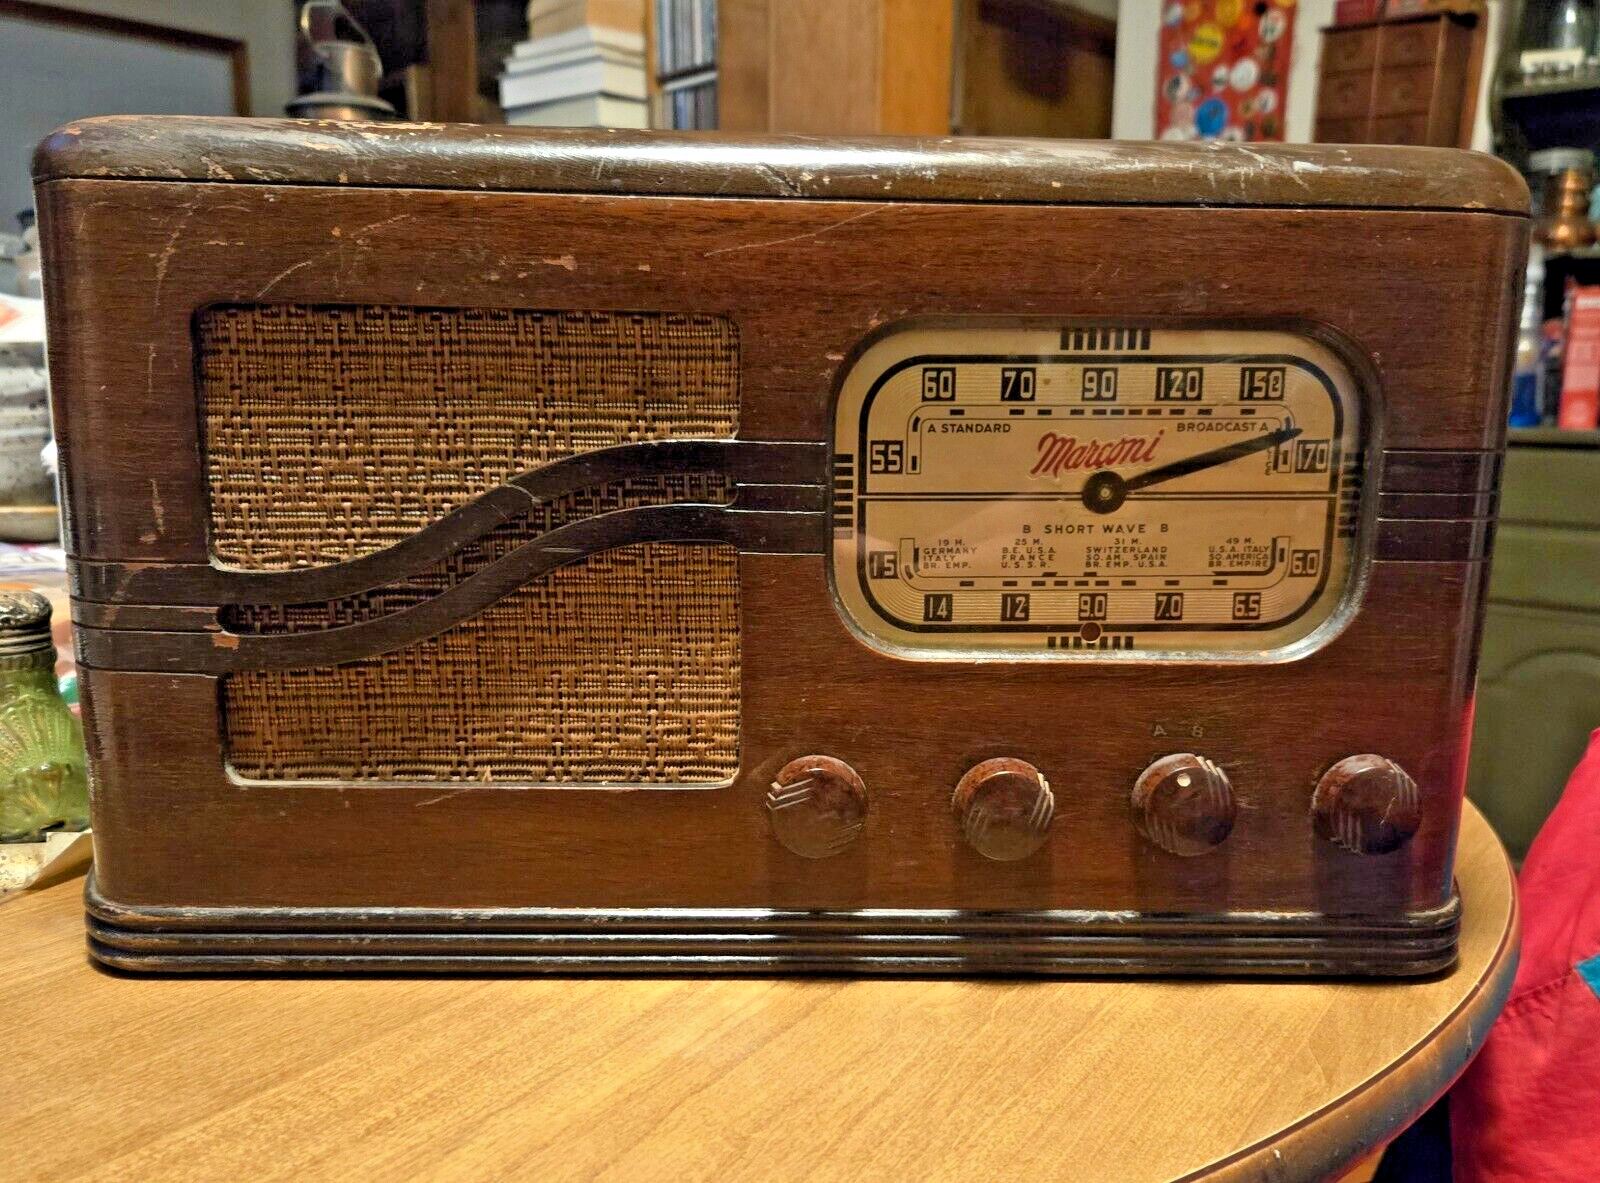 Vintage Rare Model 196 Macroni Shortwave Radio Reciever. Serial number 2204.